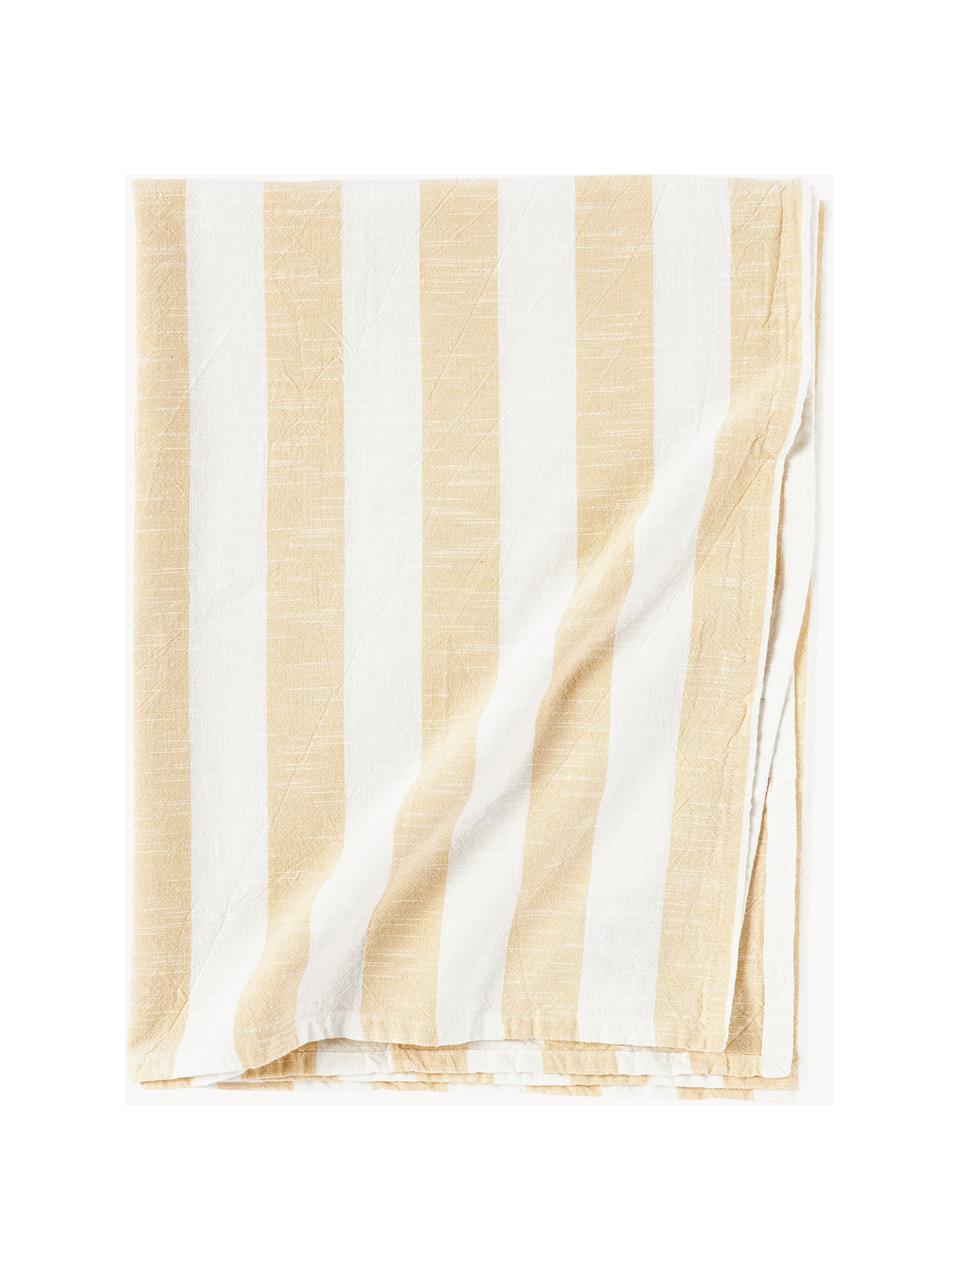 Mantel a rayas Tira, 100% algodón, Blanco, amarillo claro, De 6 a 8 comensales (An 140 x L 200 cm)